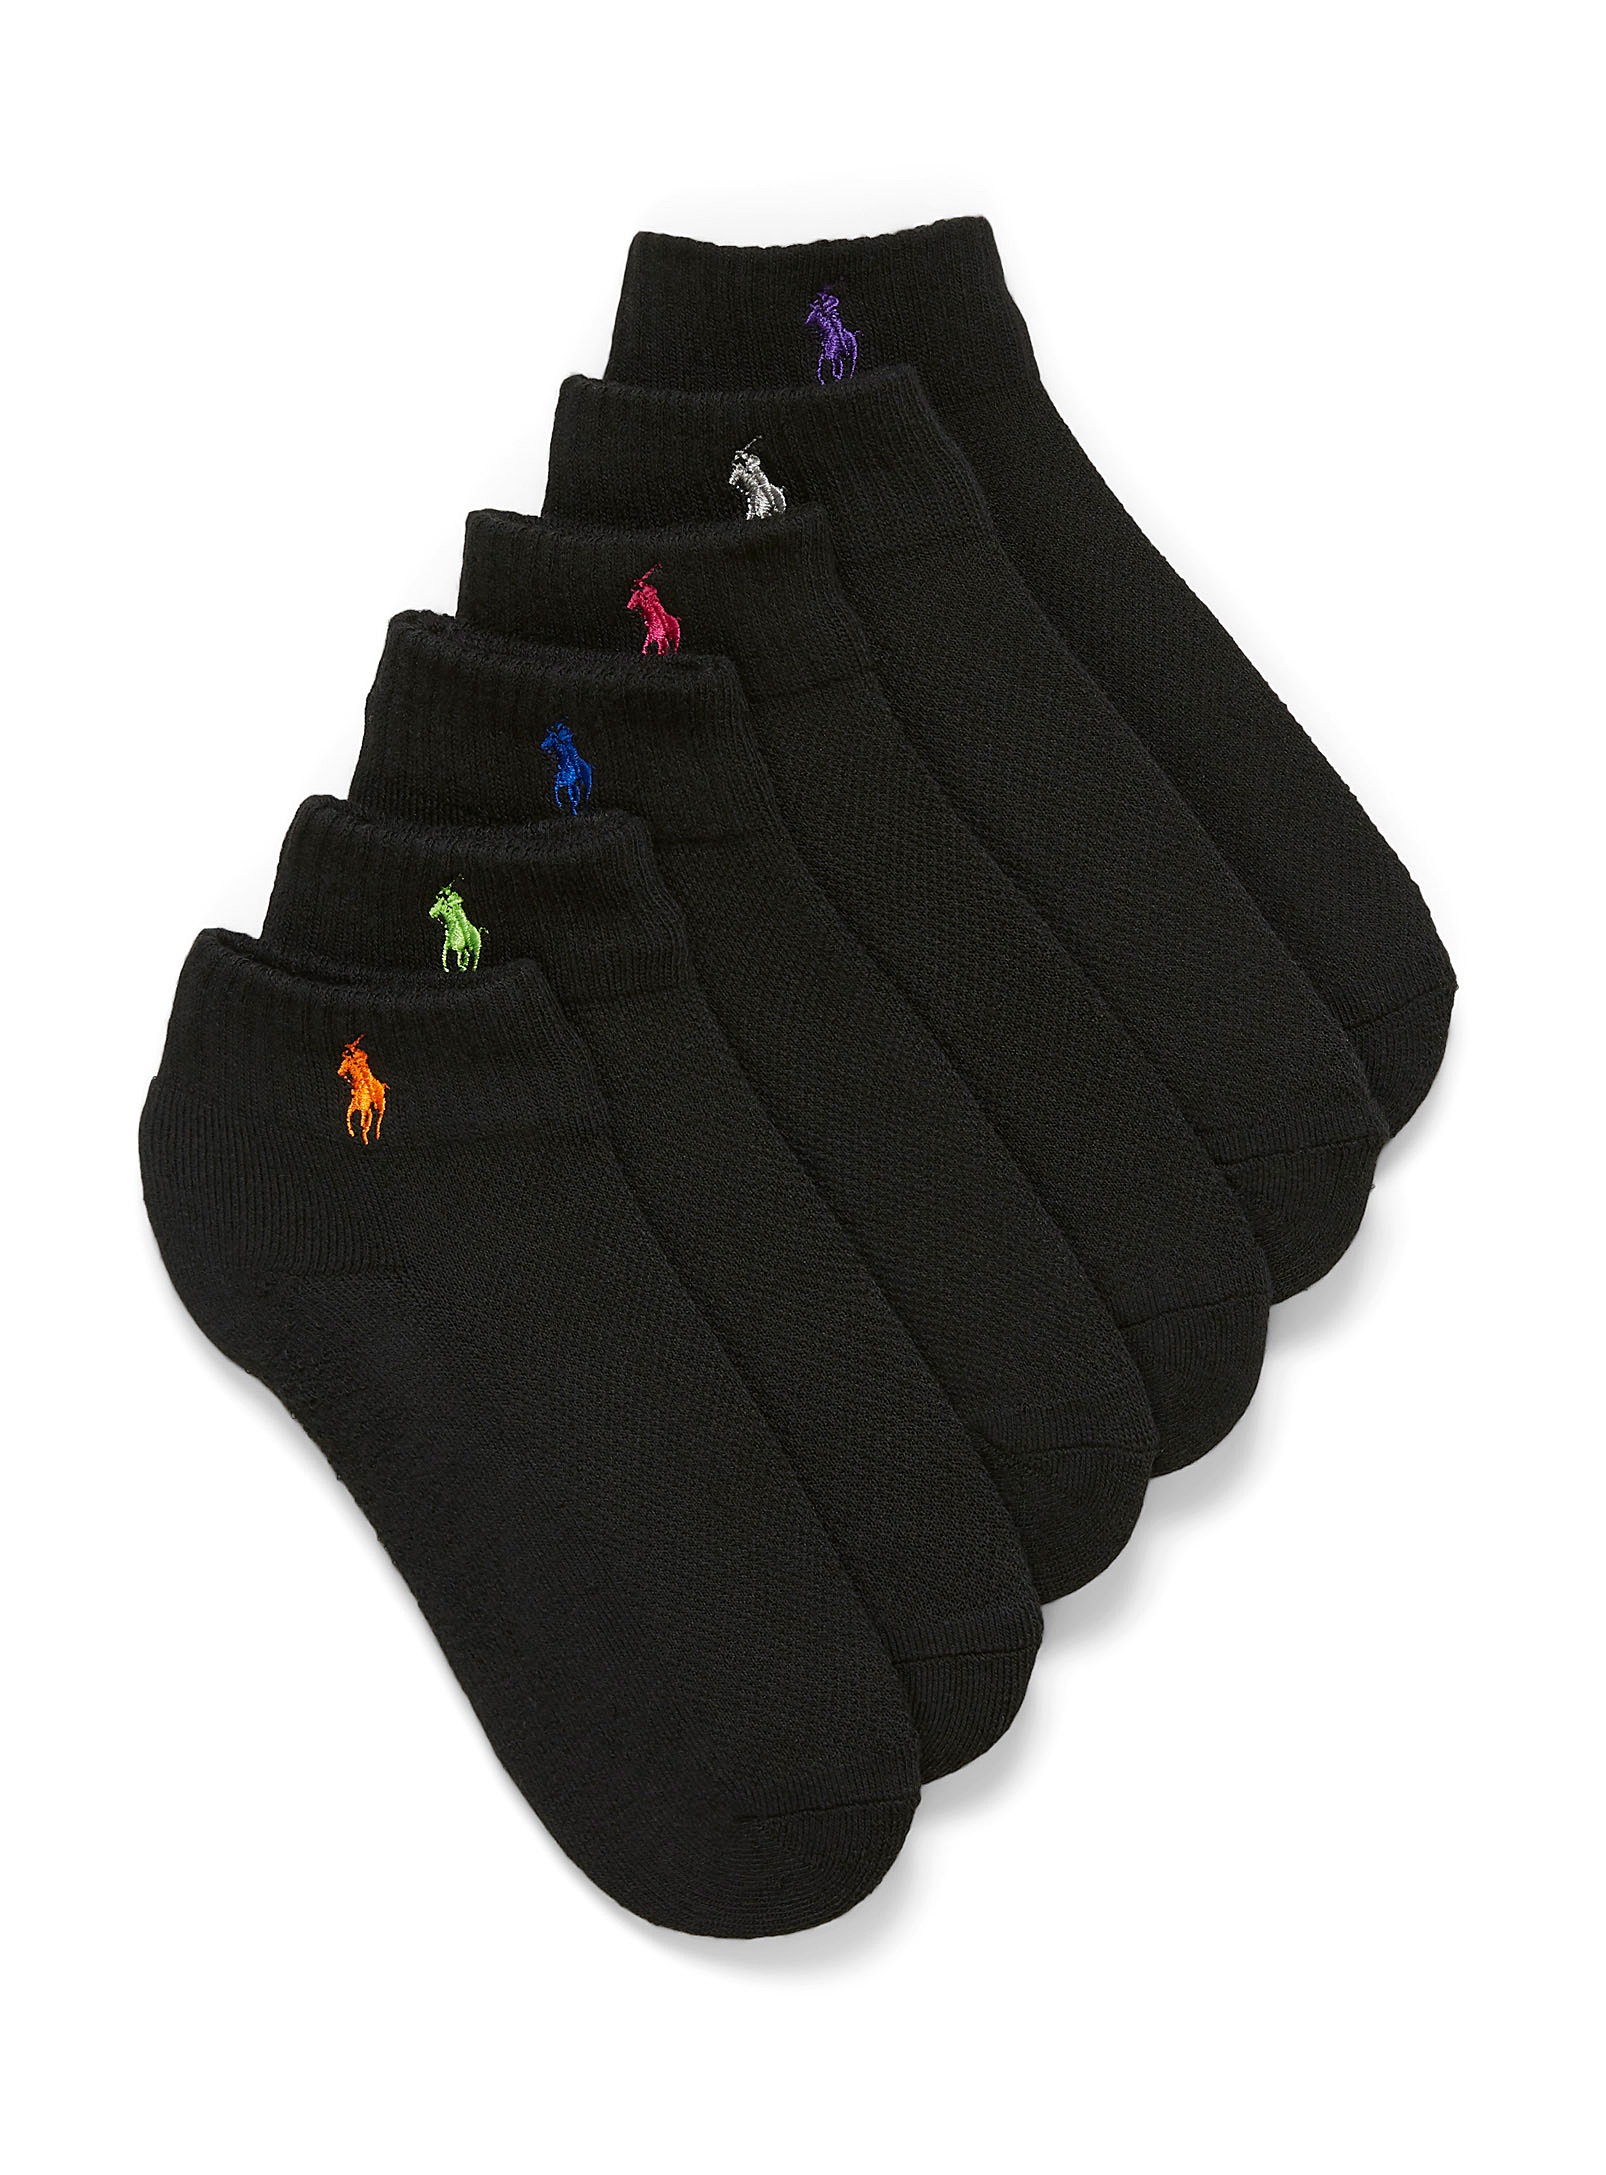 Polo Ralph Lauren - Les chaussettes courtes logos brodés Ensemble de 6